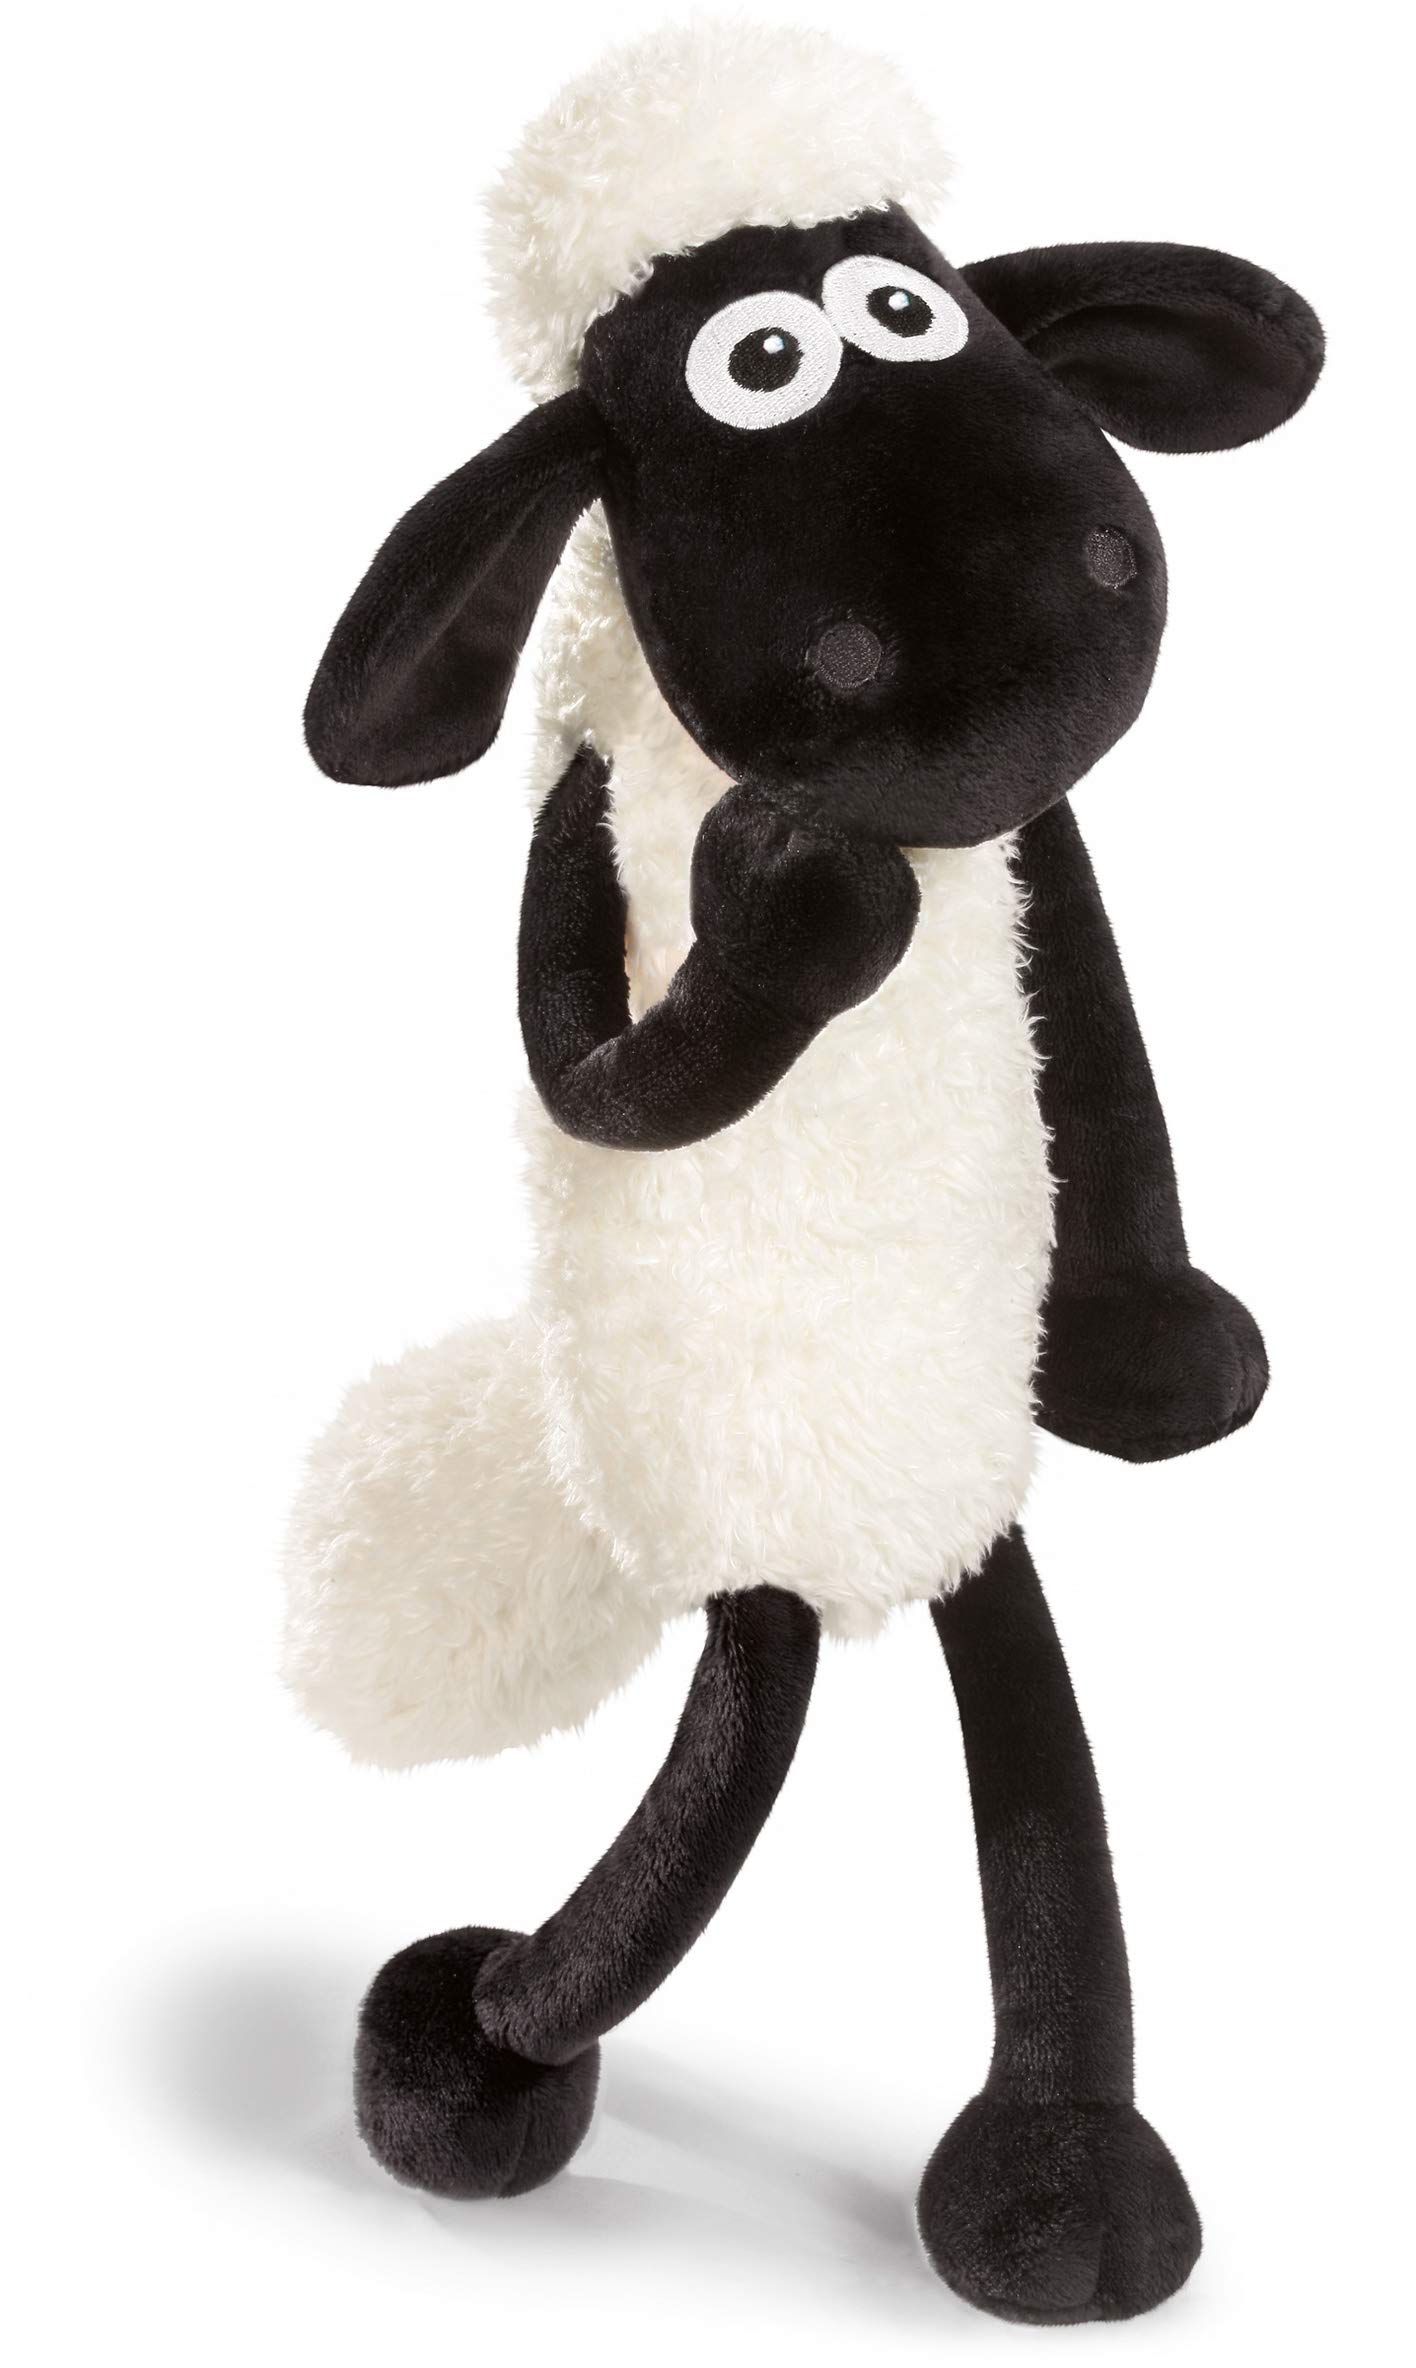 NICI Kuscheltier Shaun das Schaf 50 cm – Schaf Plüschtier für Mädchen, Jungen & Babys – Flauschiges Stofftier Schaf zum Kuscheln, Spielen und Schlafen – Gemütliches Schmusetier für jedes Alter – 45847